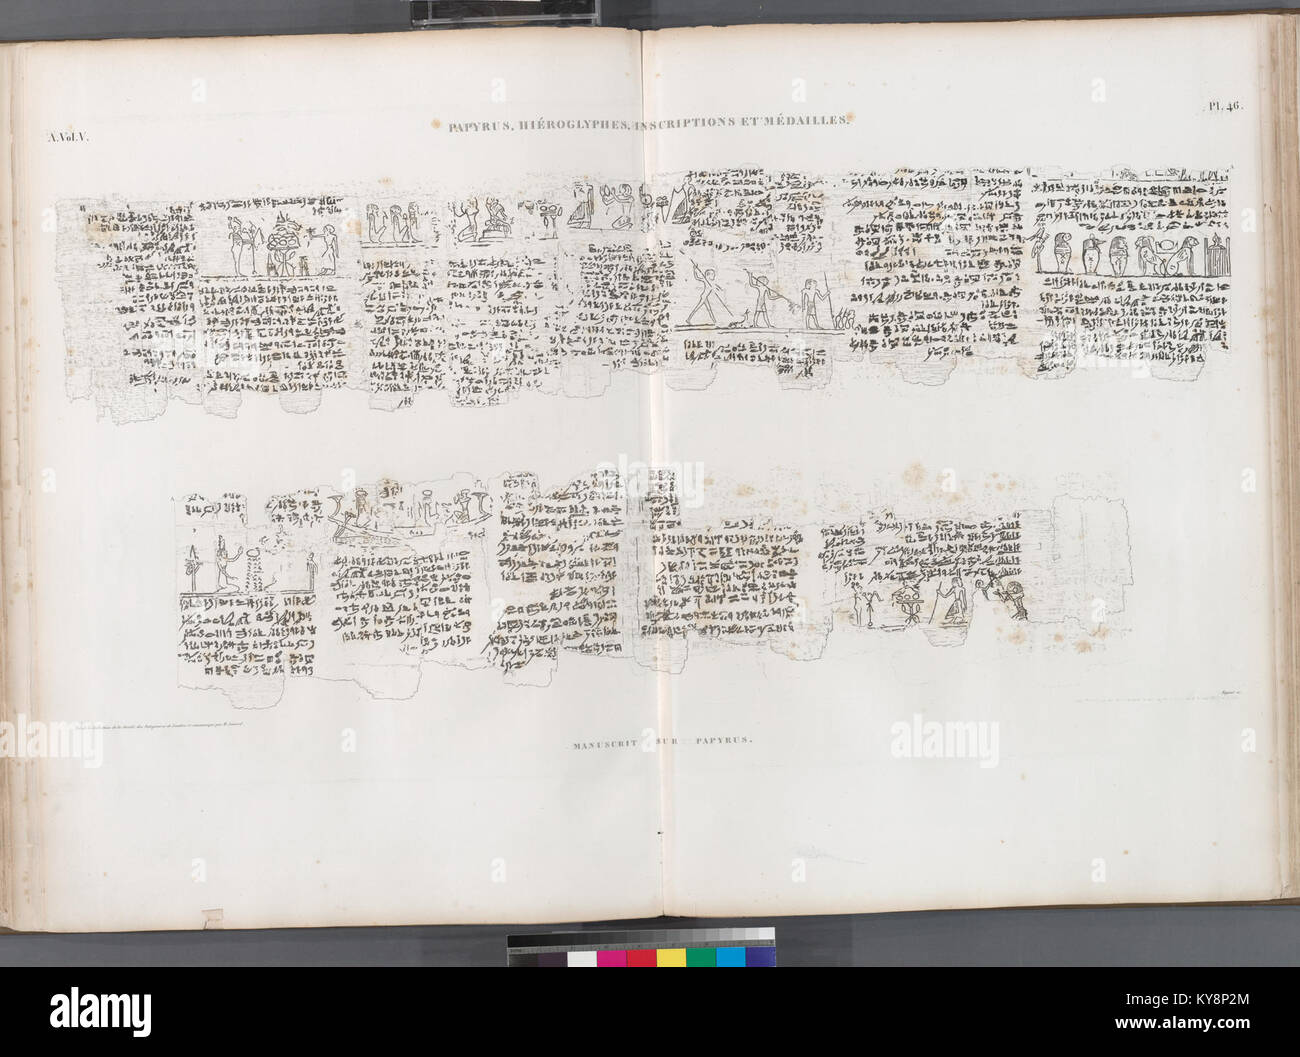 Papyrus, hiéroglyphes, inscriptions et médailles. Manuscrit sur papyrus (NYPL b14212718-1268214) Stock Photo